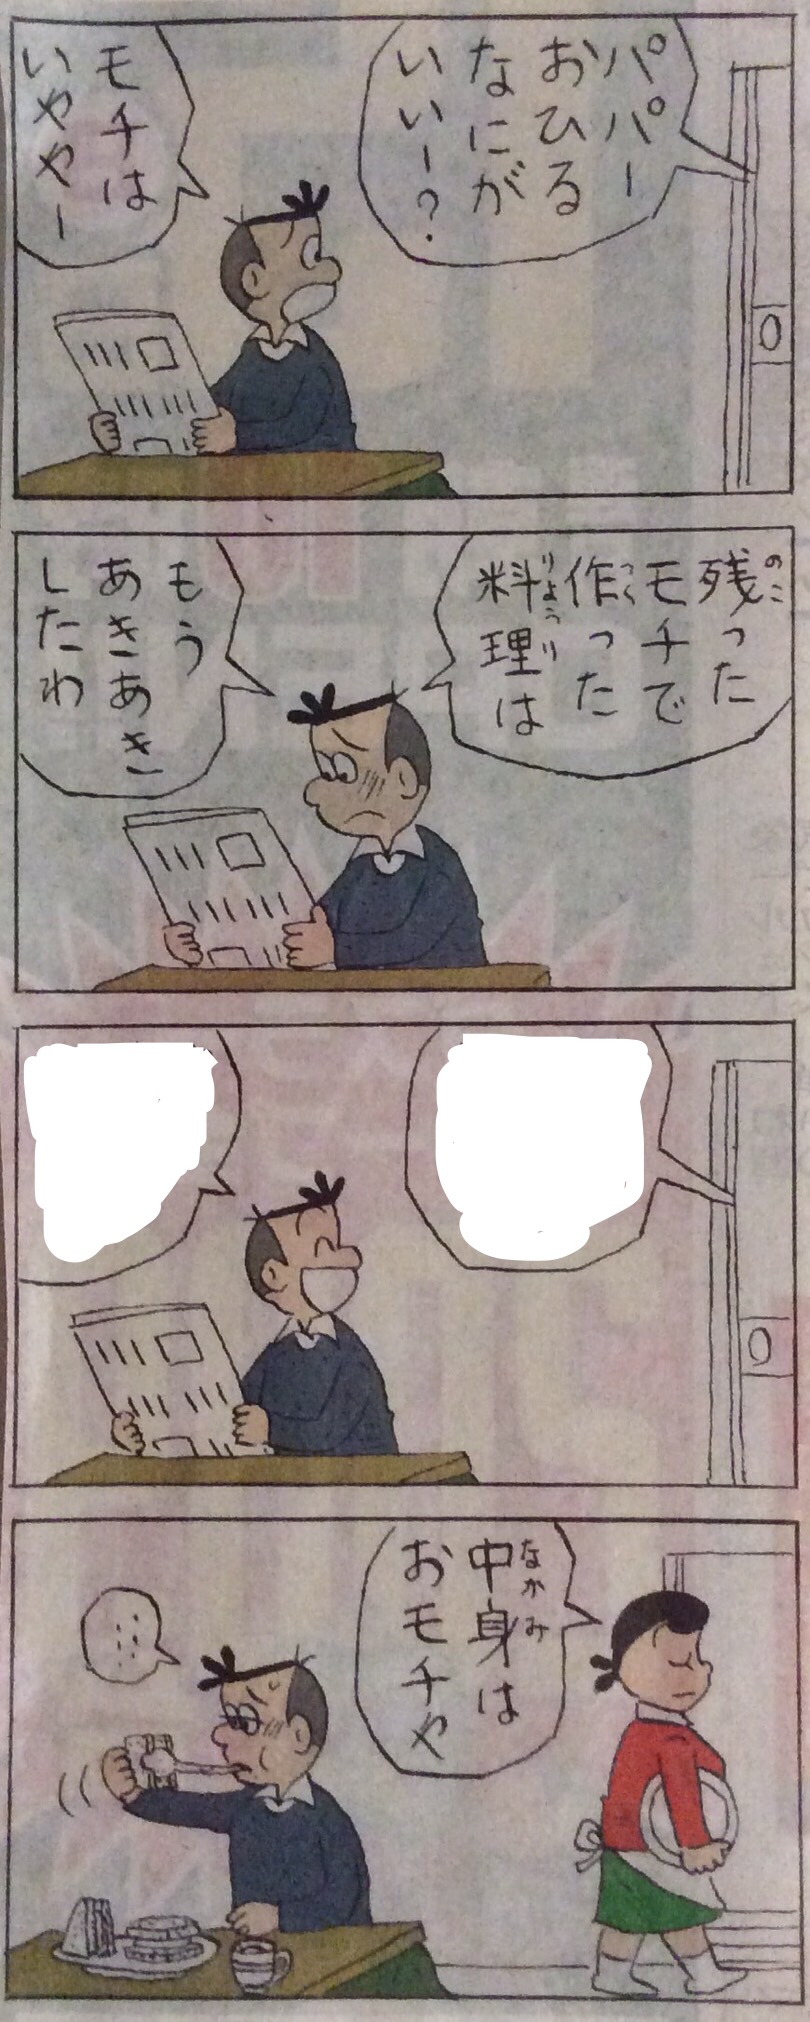 四コマ漫画を使って国語力up 石川県金沢市で不登校に取り組むみんなの家庭教師